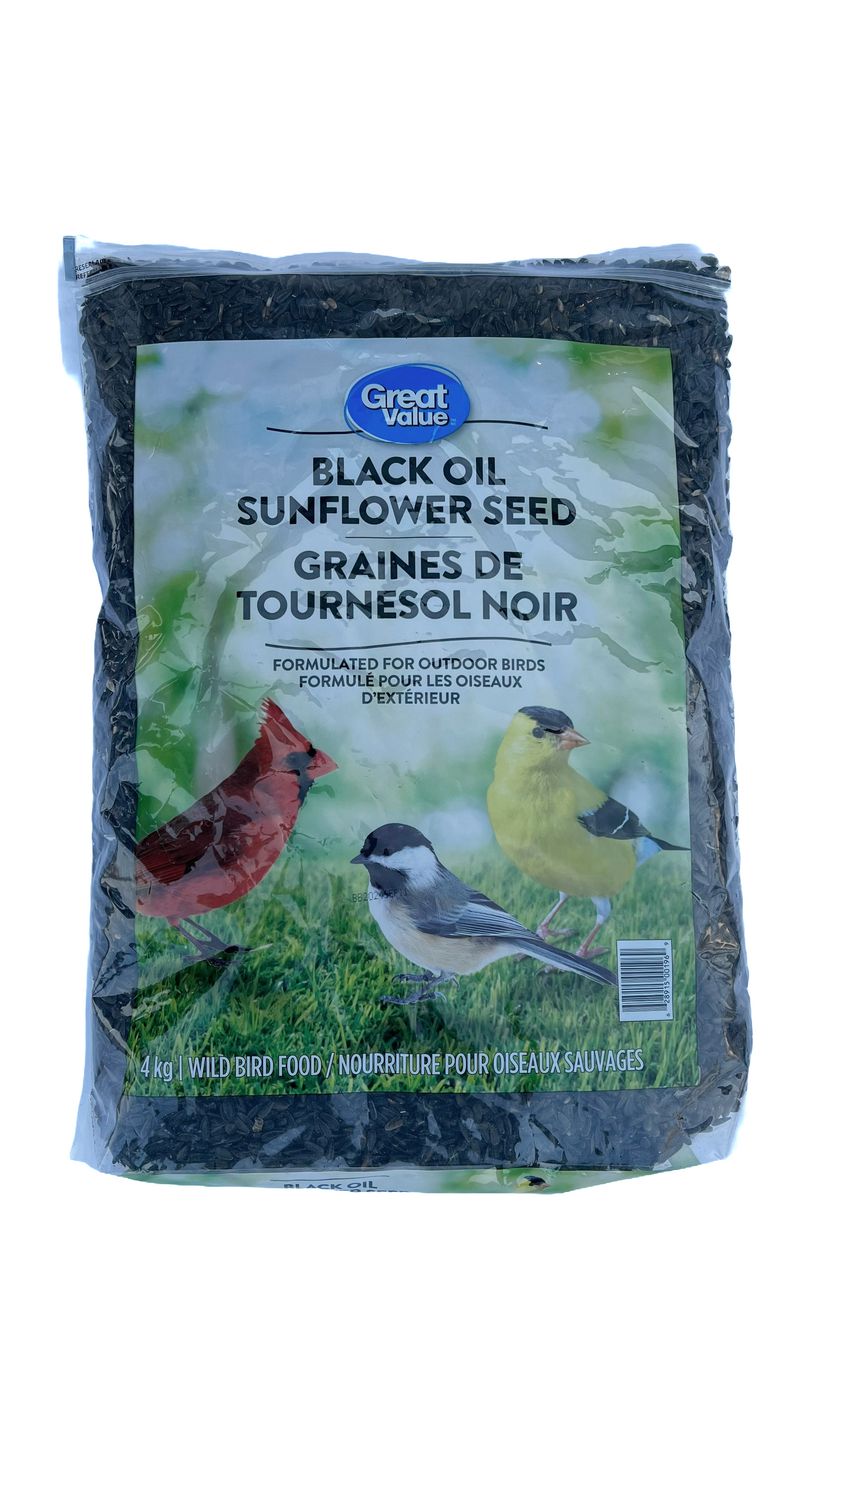 Nourriture pour oiseaux sauvages graines de tournesol noir Great Value 13  kg 